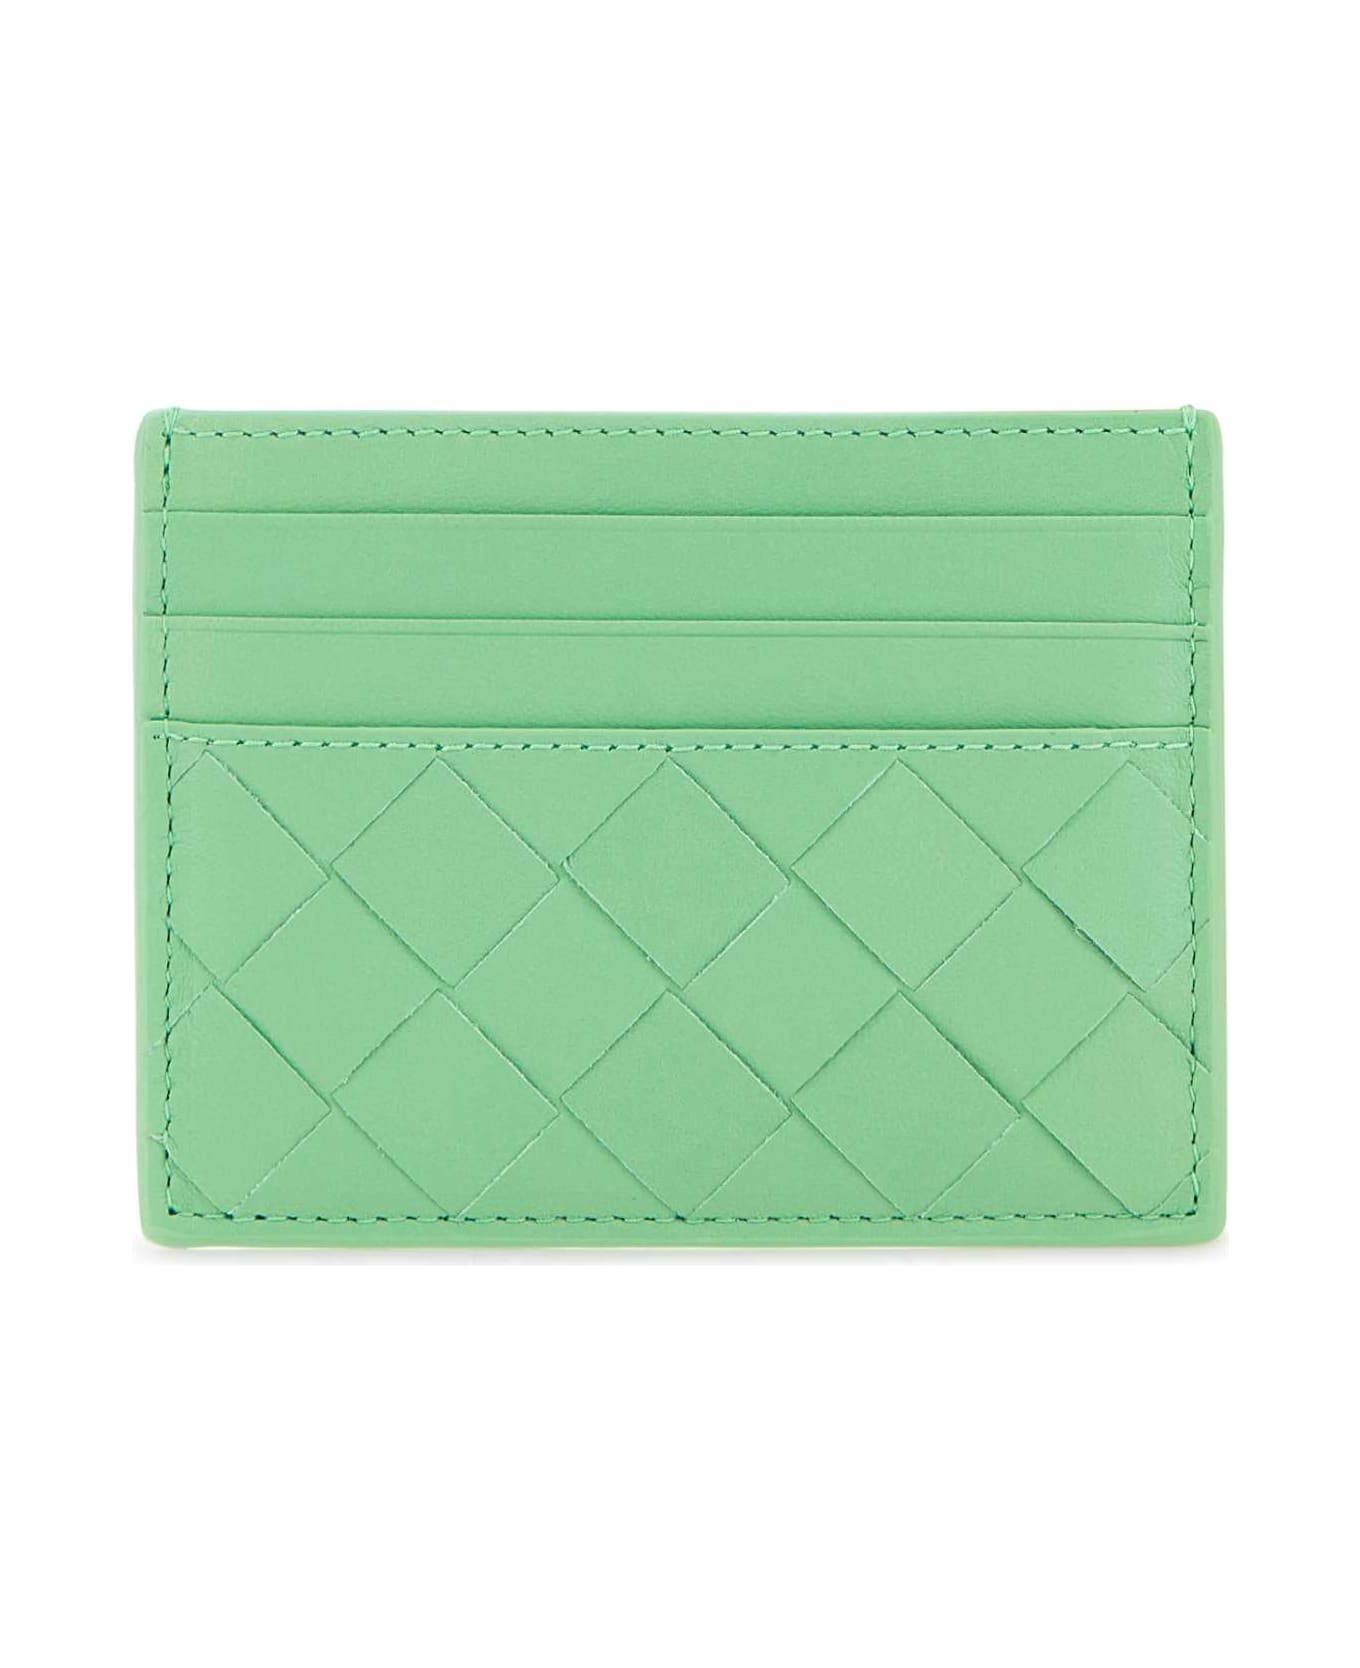 Bottega Veneta Mint Green Leather Card Holder - SIRENMINTGOLDEN